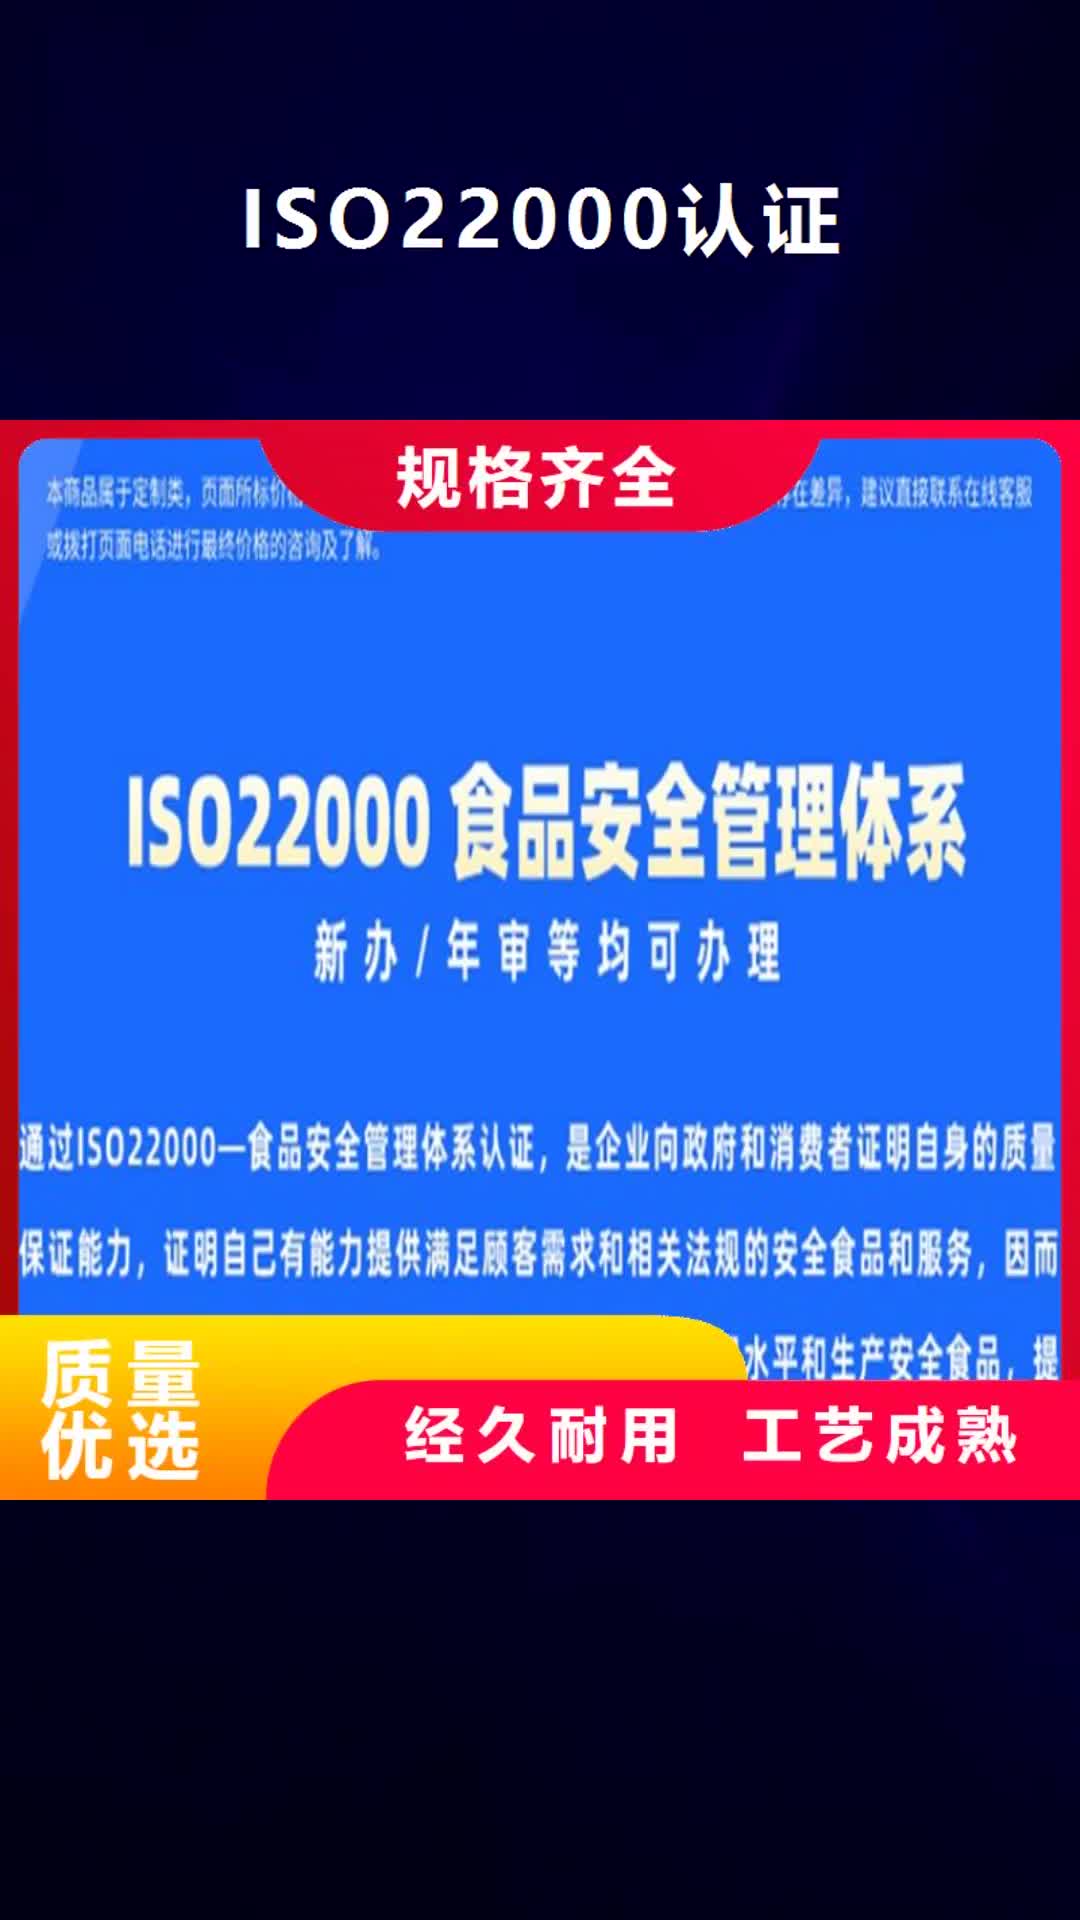 【海西ISO22000认证】